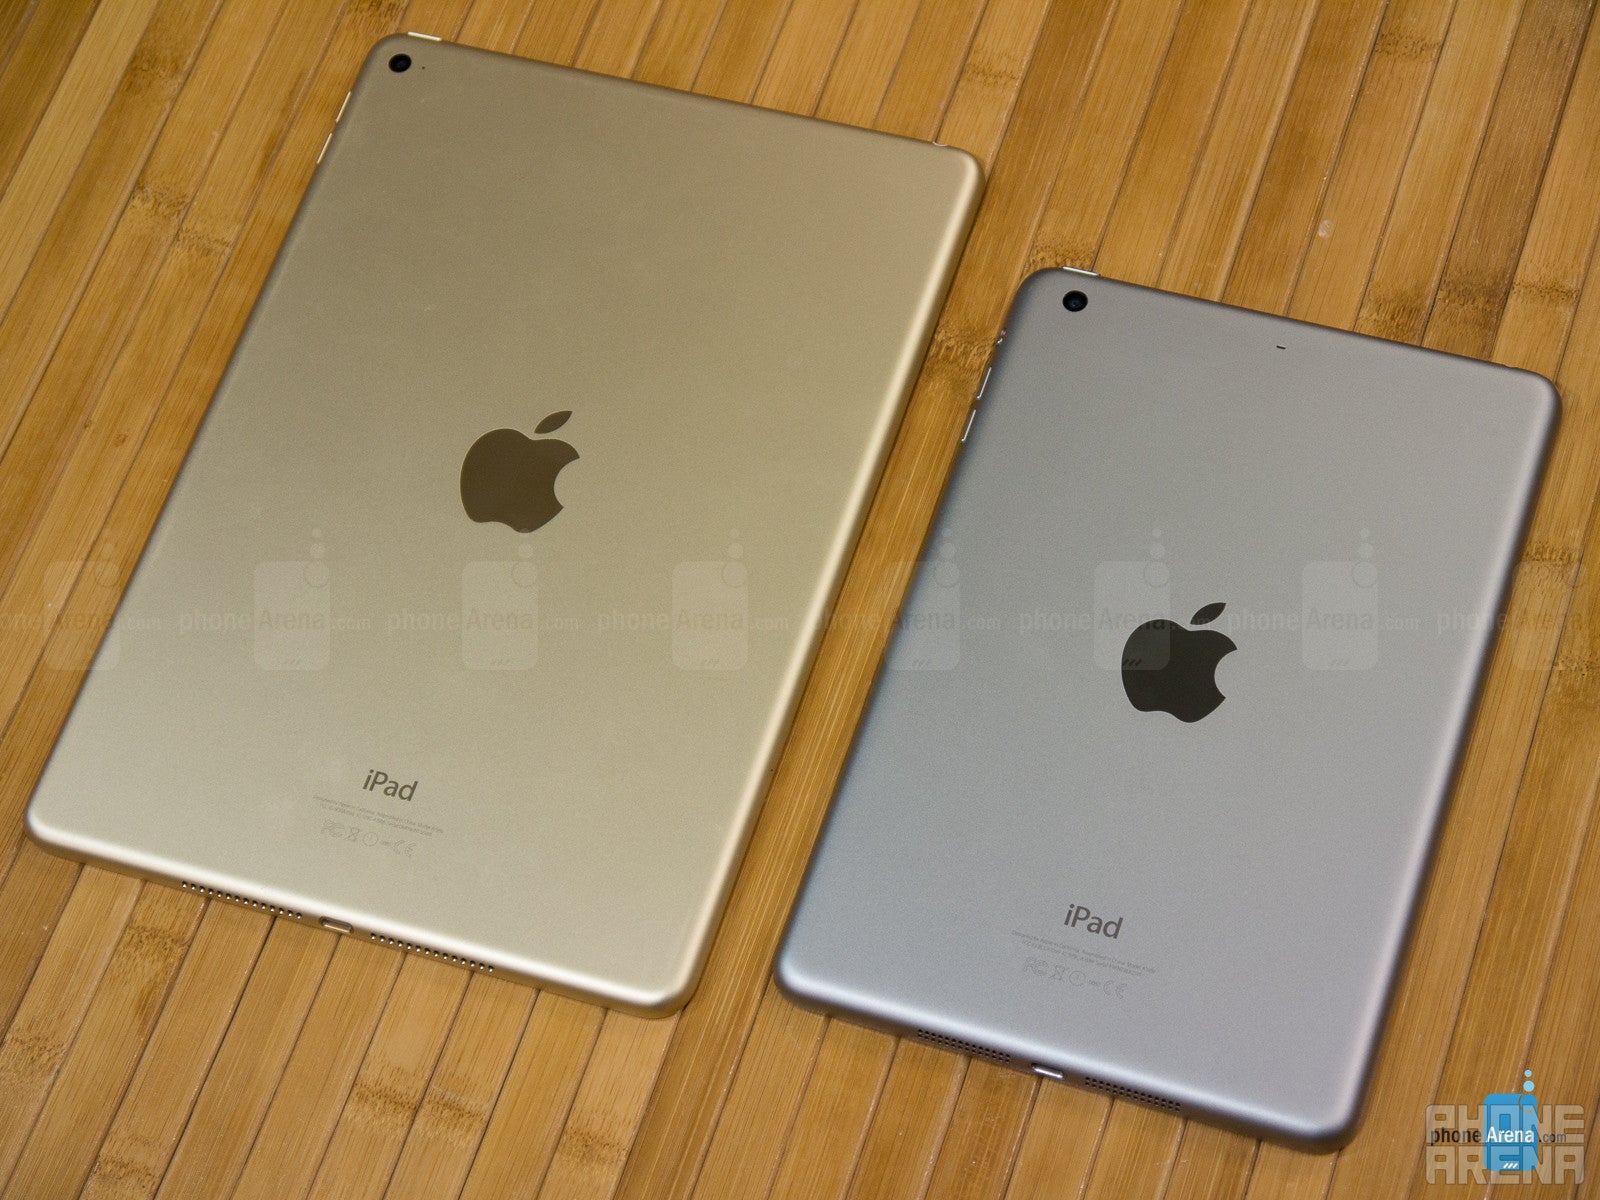 Apple iPad Air 2 vs Apple iPad mini 3